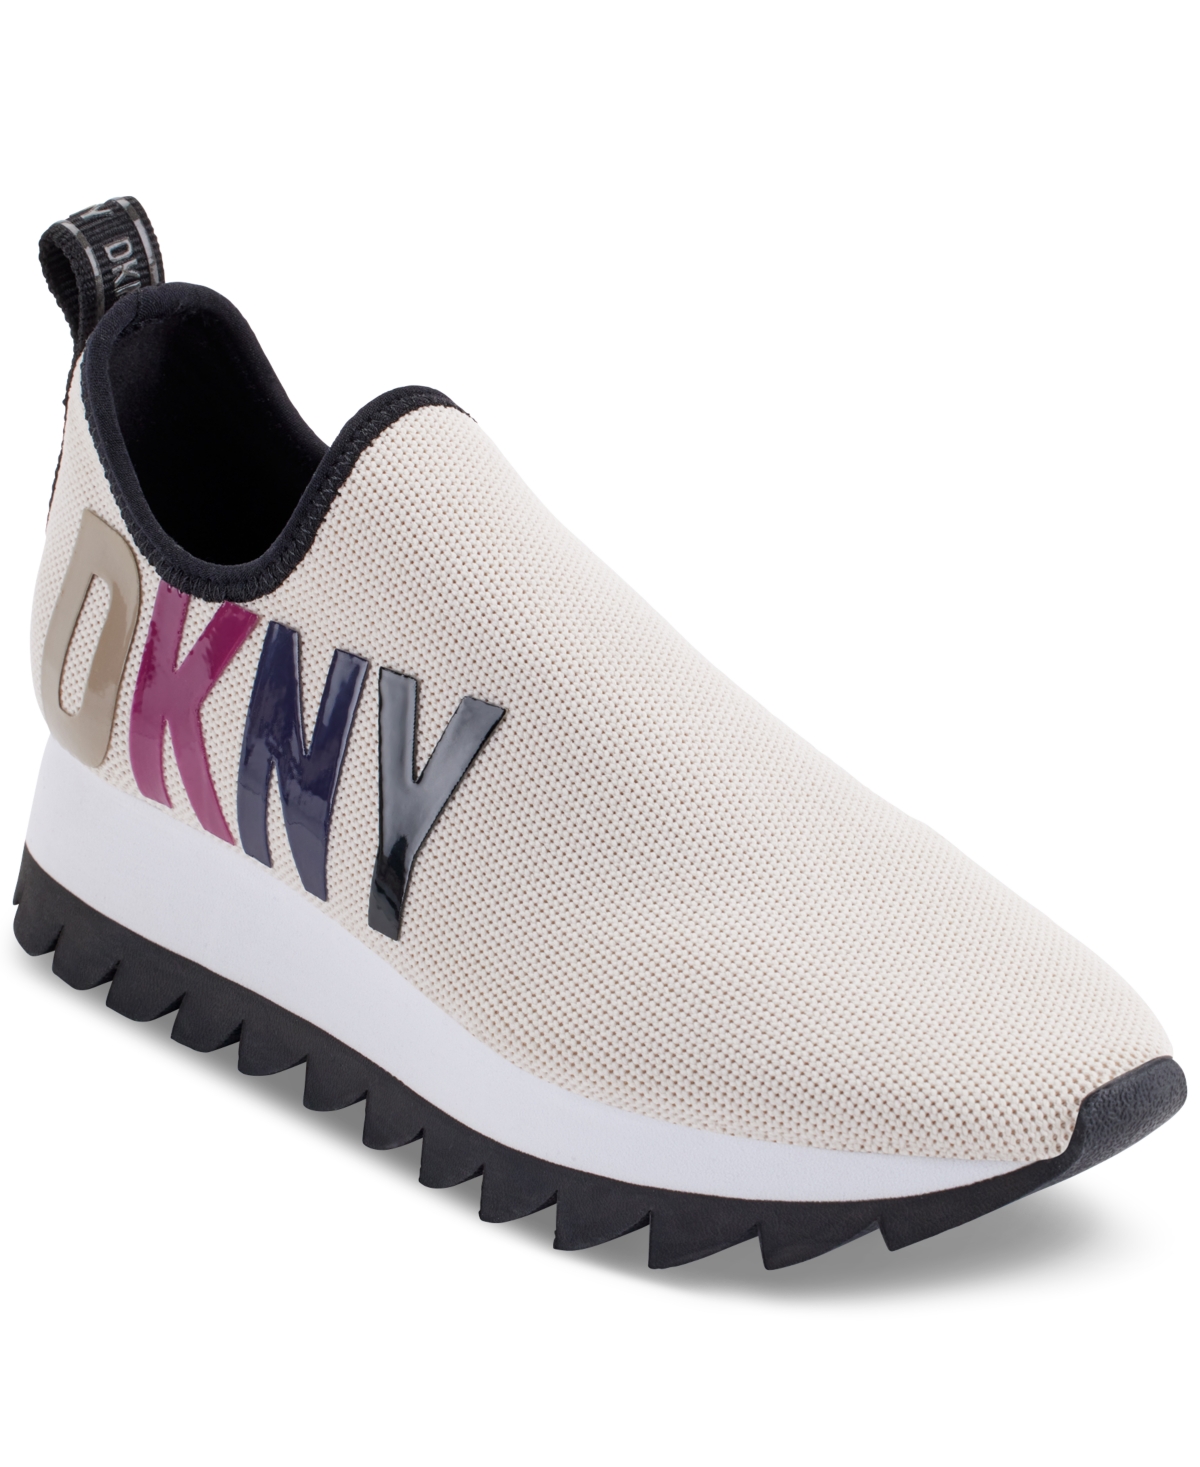 Dkny Women's Azer Slip-on Fashion Platform Sneakers In Pebble Multi